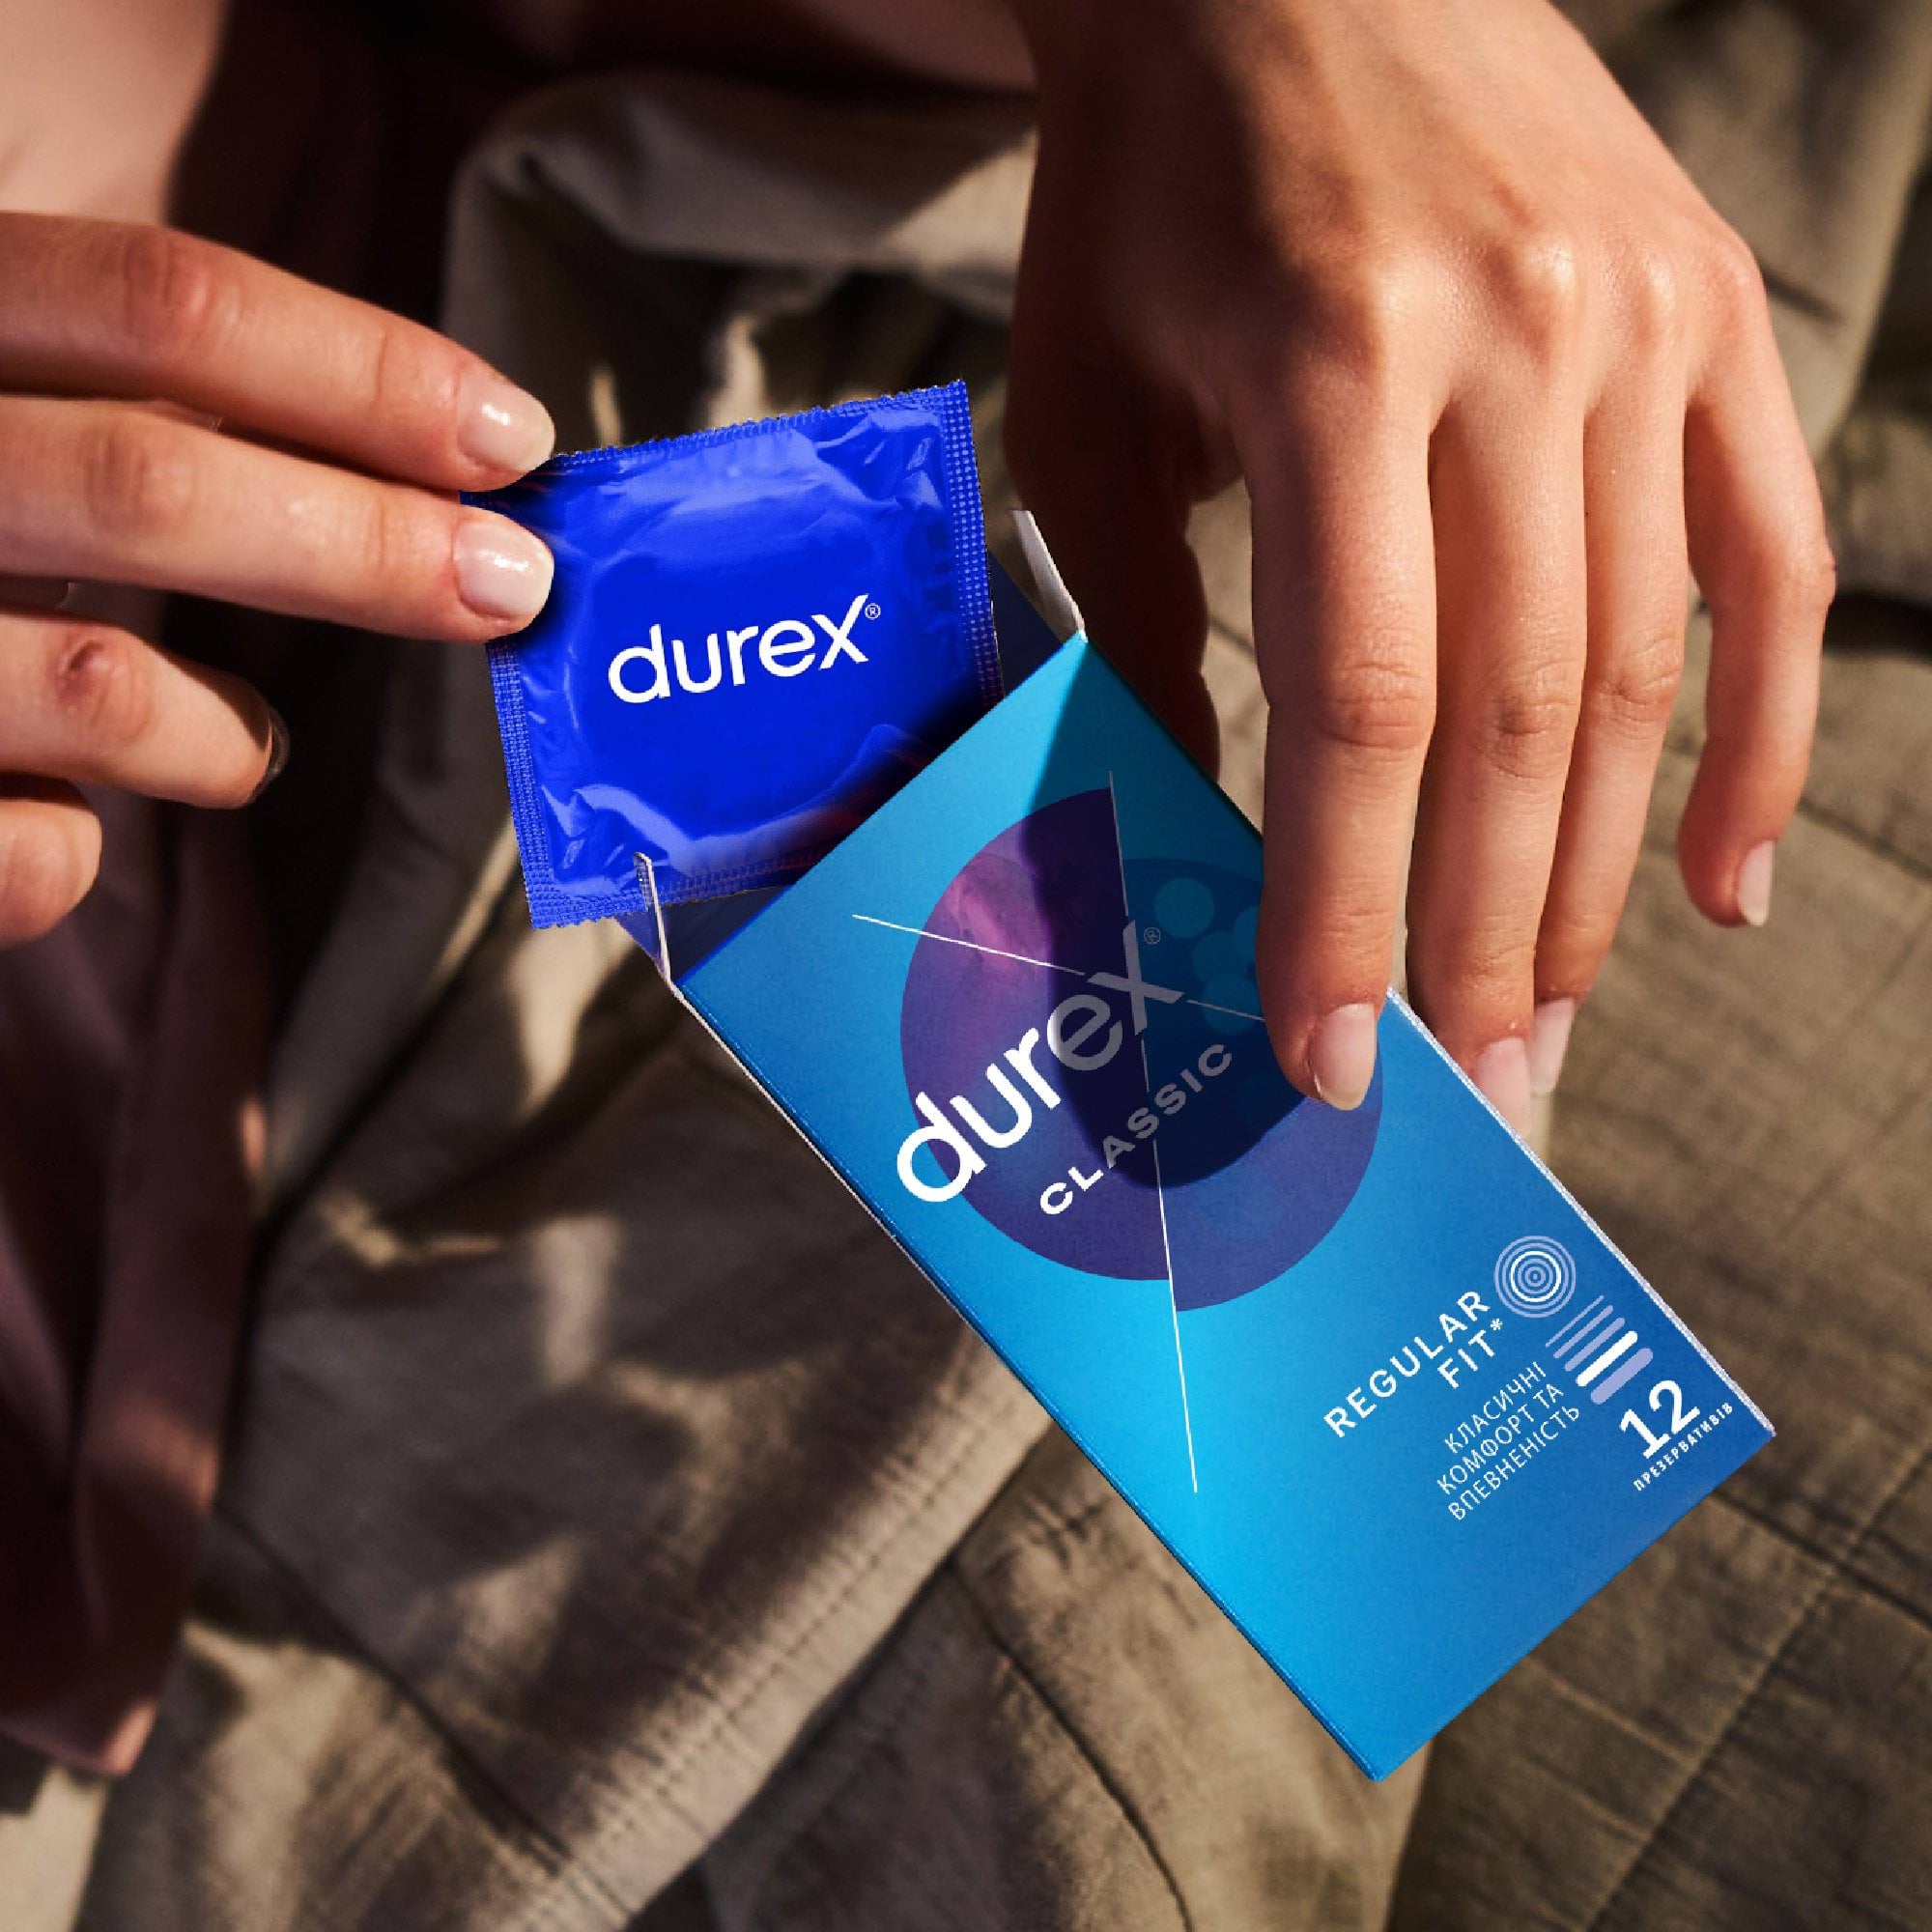 Презервативы Durex Classic латексные с силиконовой смазкой, 12 шт